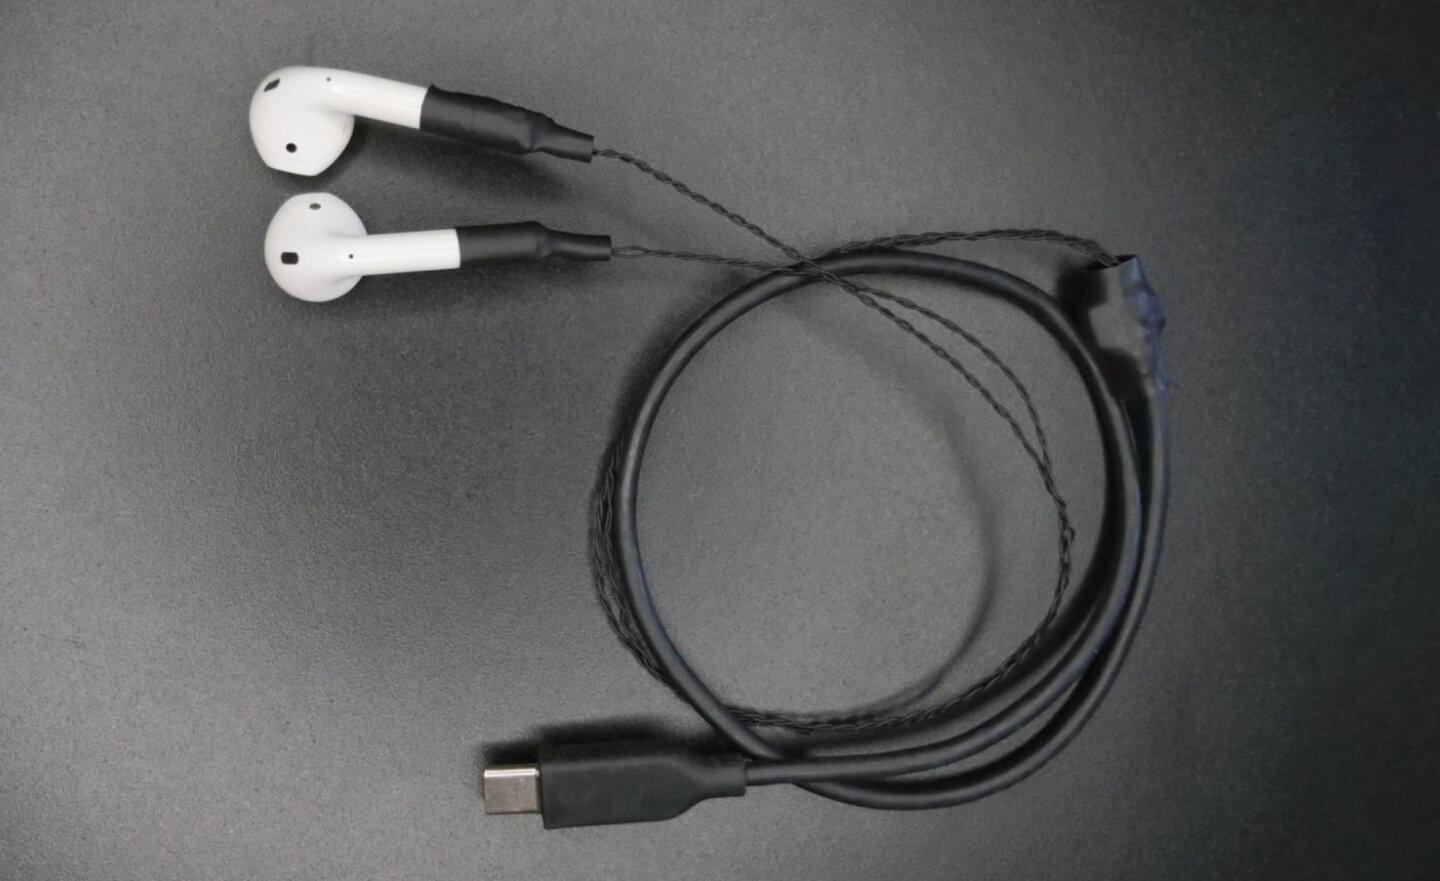 工程師成功改造 AirPods，讓它變成 USB-C 的有線耳機